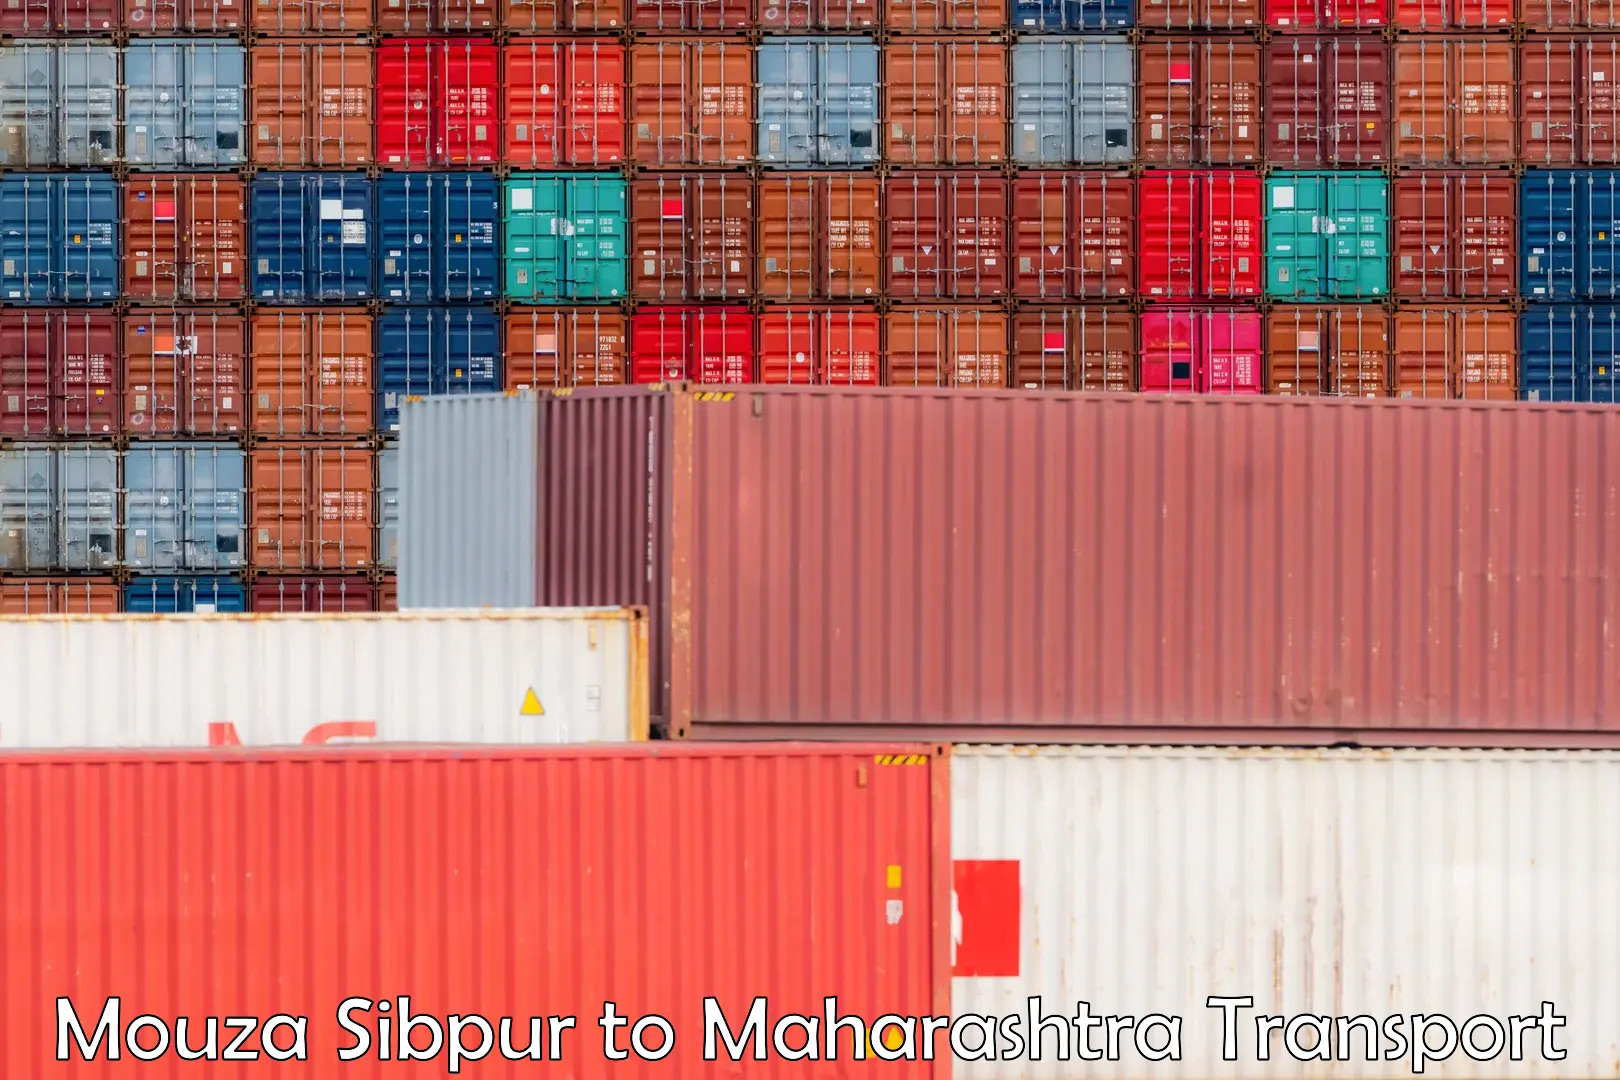 Pick up transport service Mouza Sibpur to Maharashtra